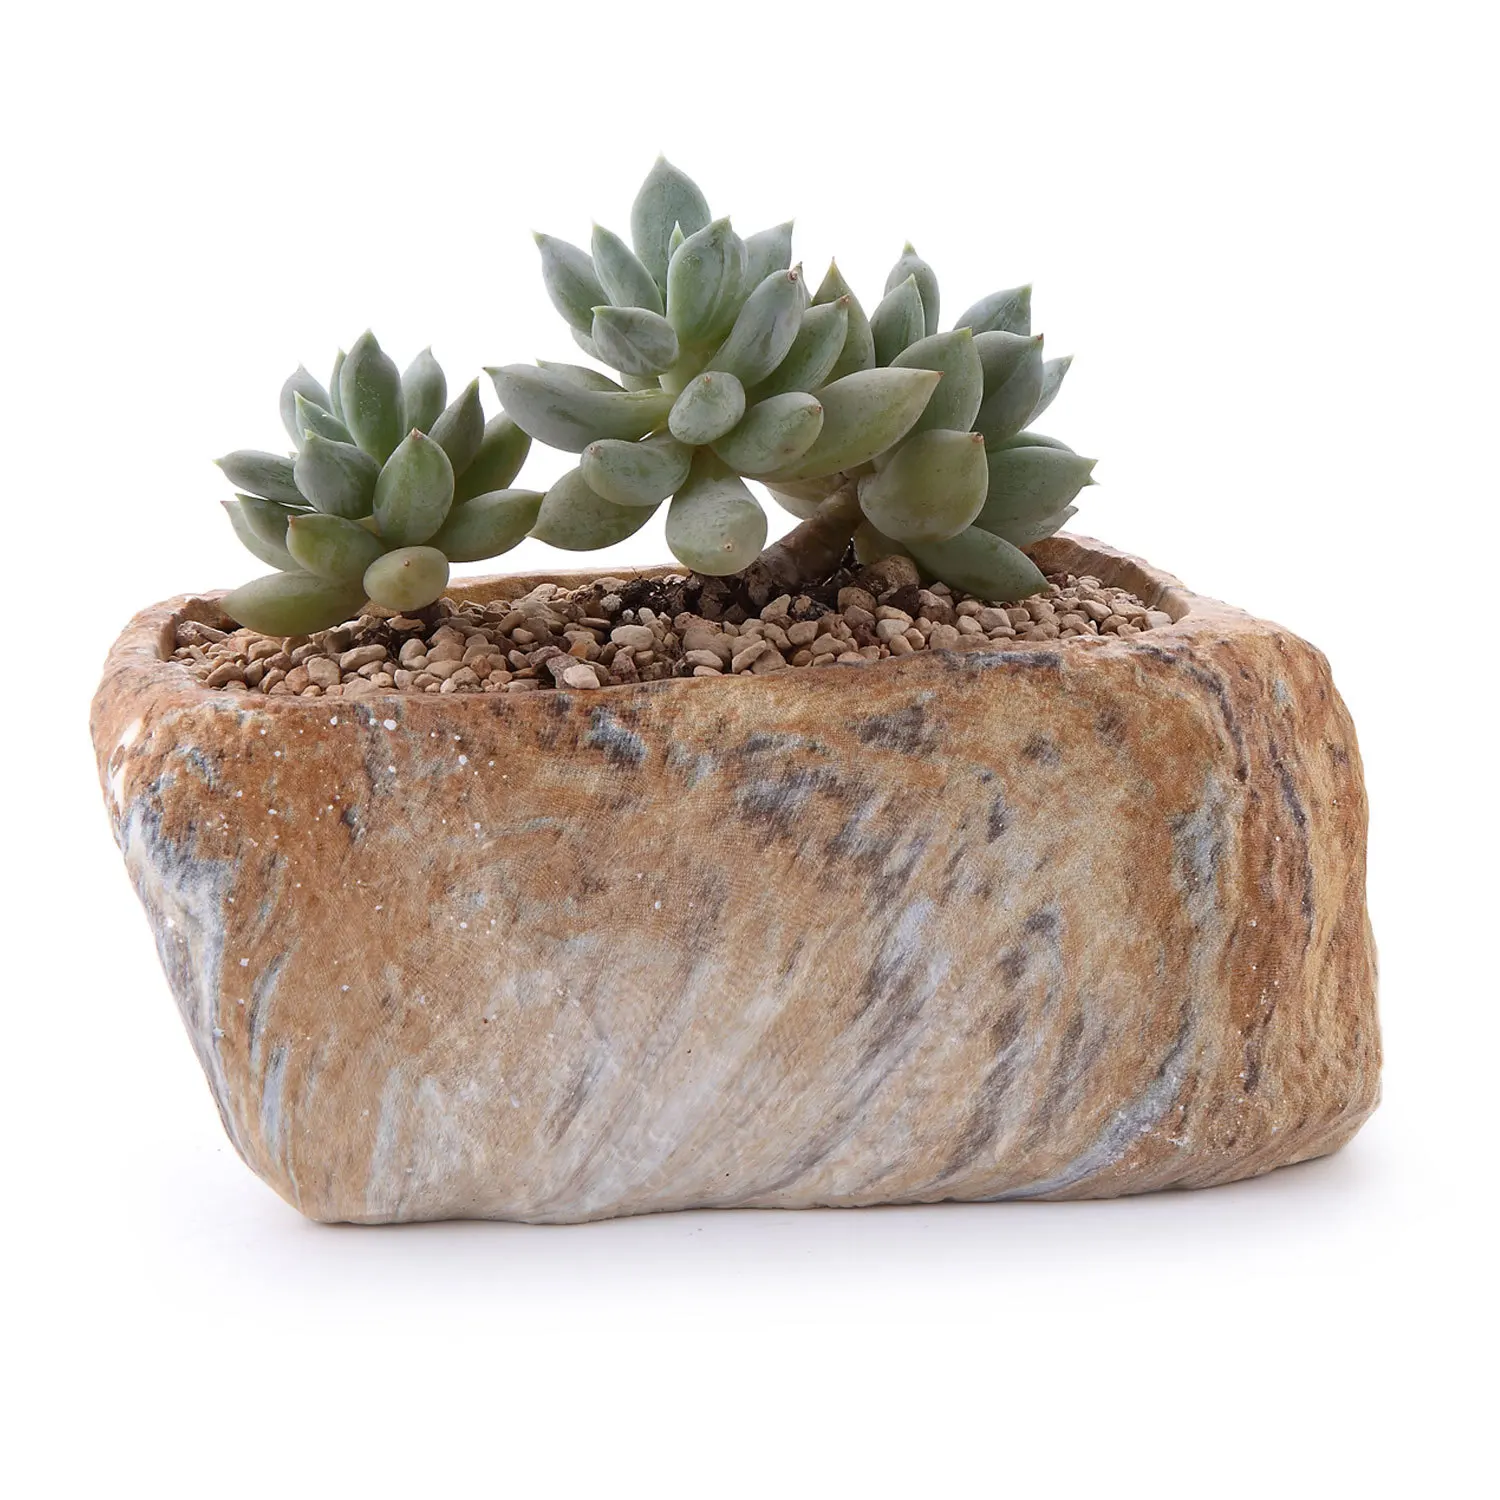 Отличительная форма камня сочные ящик для комнатных растений завод полимерный